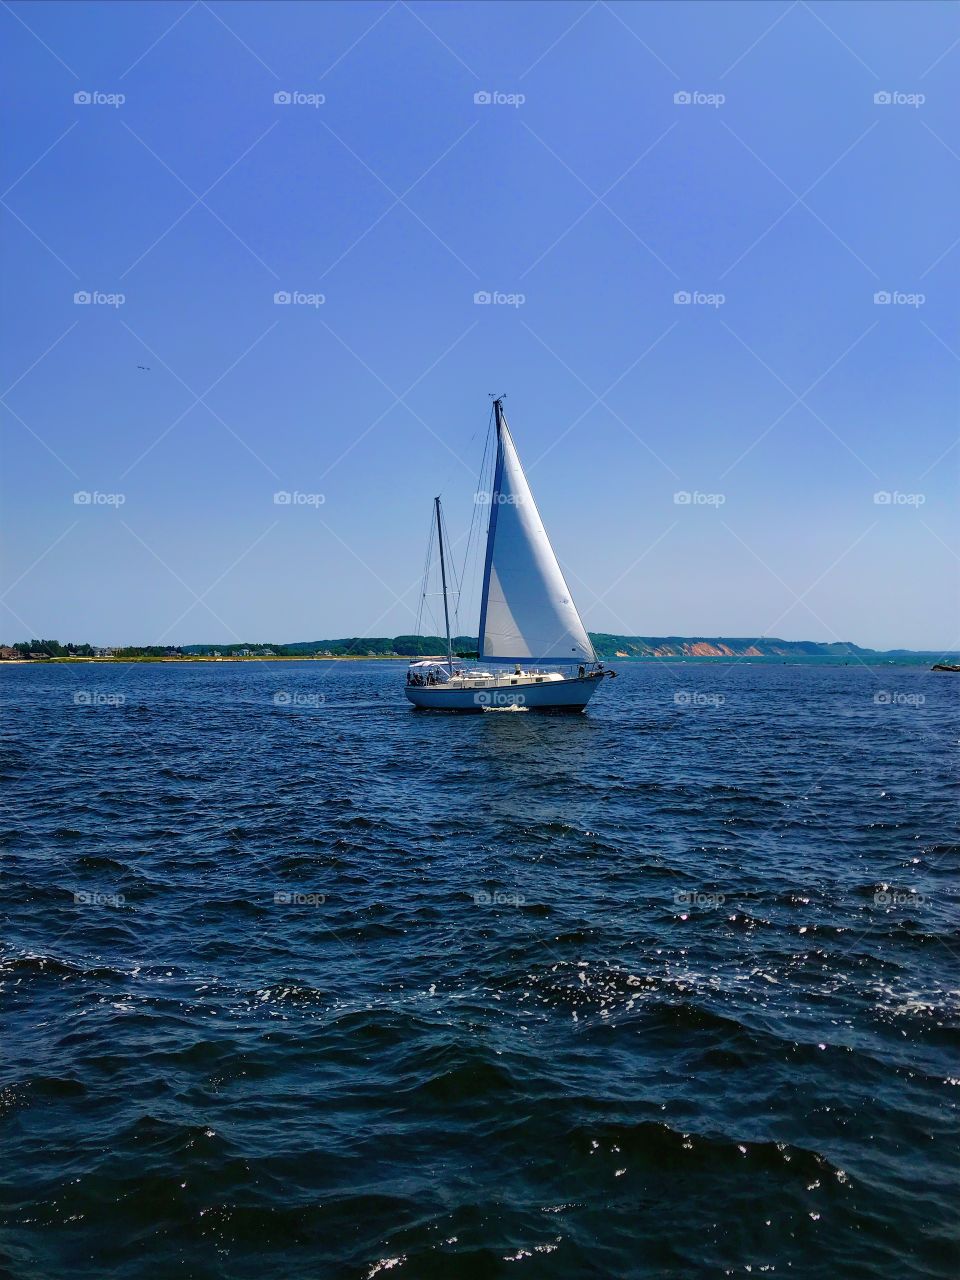 Sailboat sailing on Lake Michigan—taken in Ludington, Michigan 